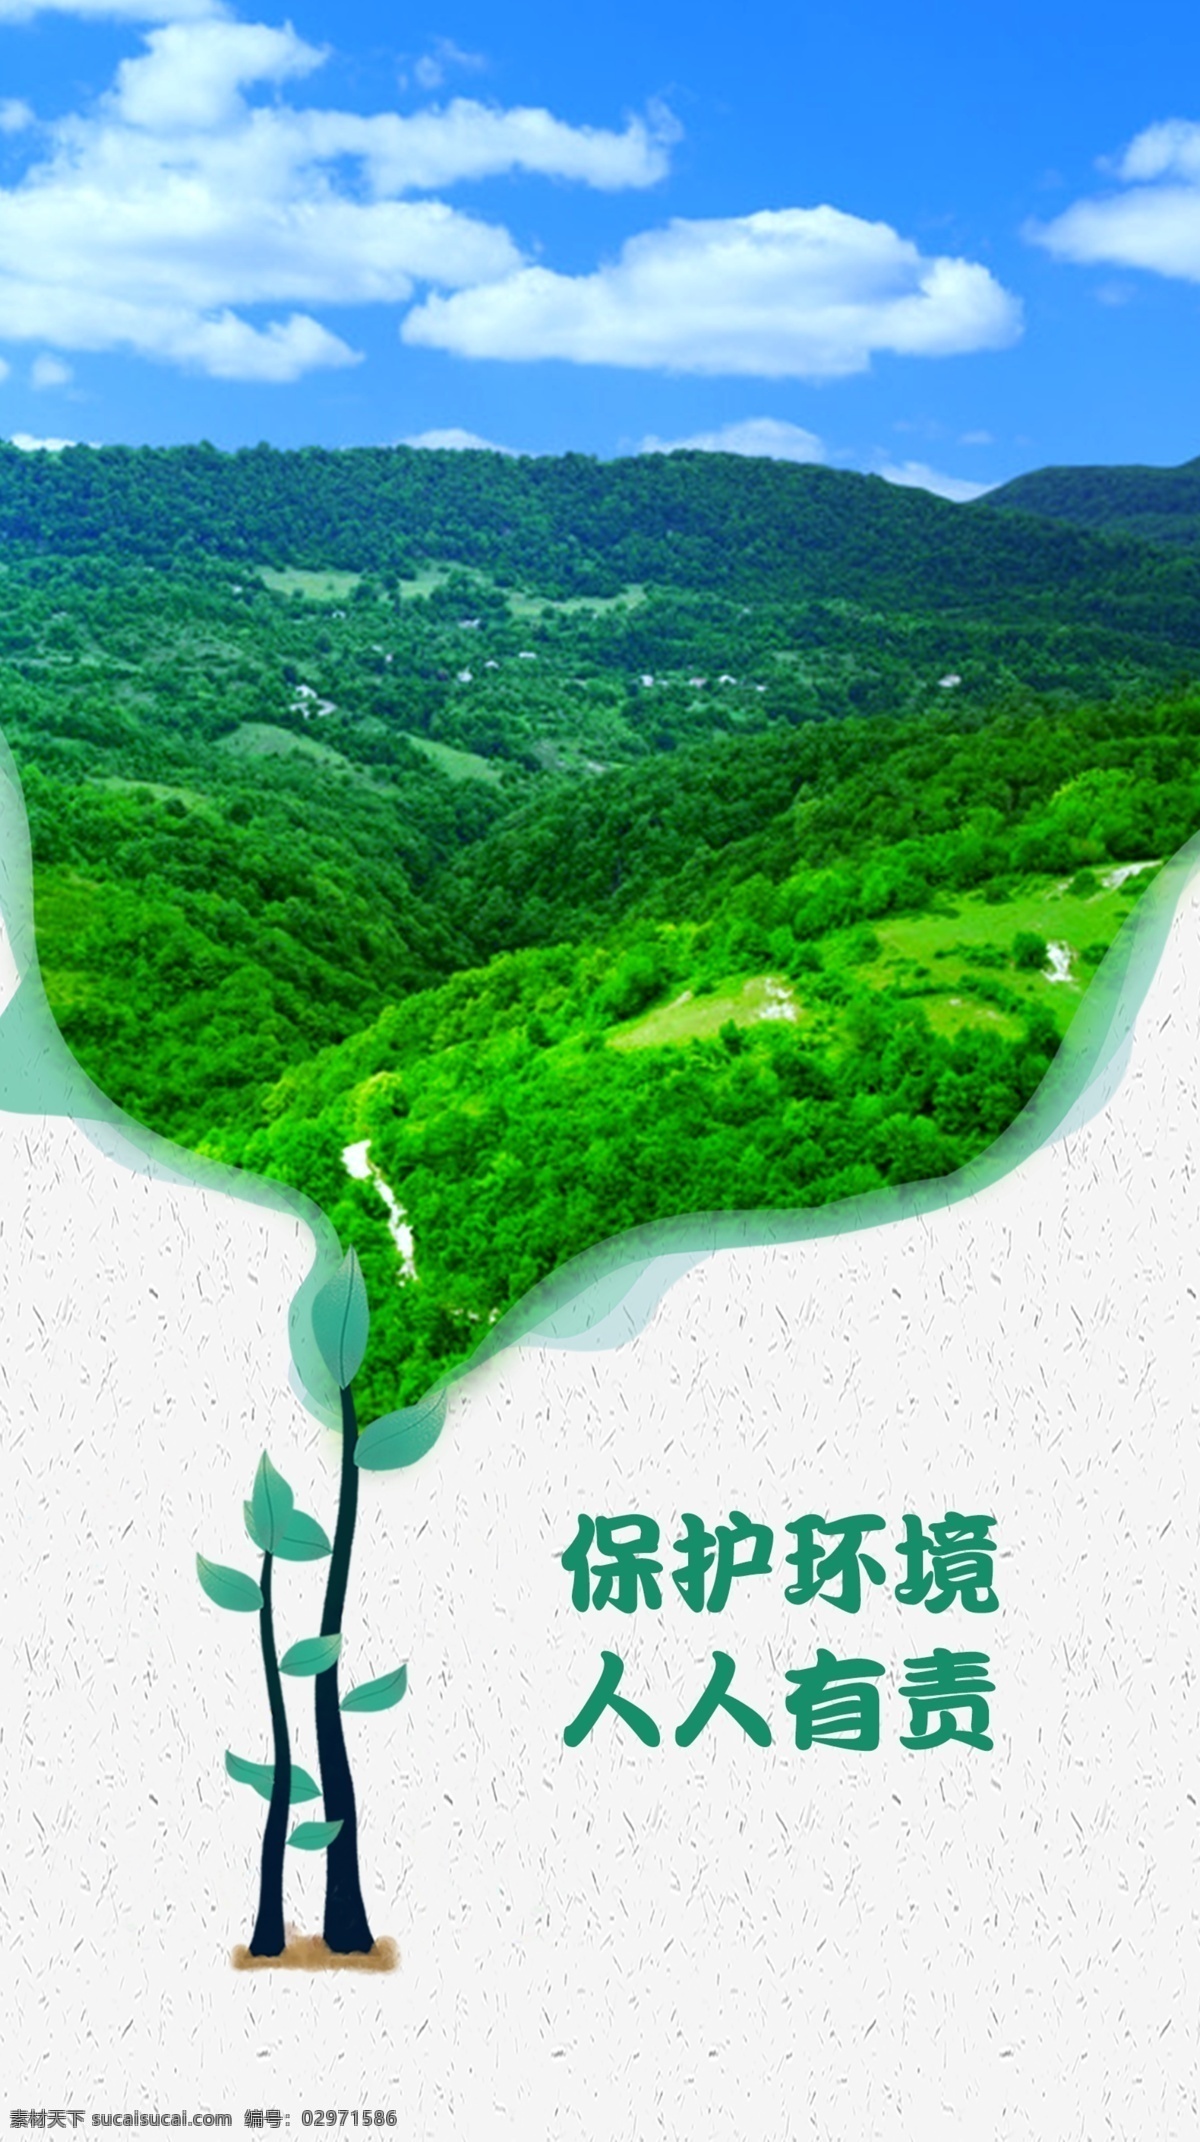 保护环境 森林 森林海报 保护森林 人人有责 海报 种树 环境 蓝天白云 地球日 植树节 植树节海报